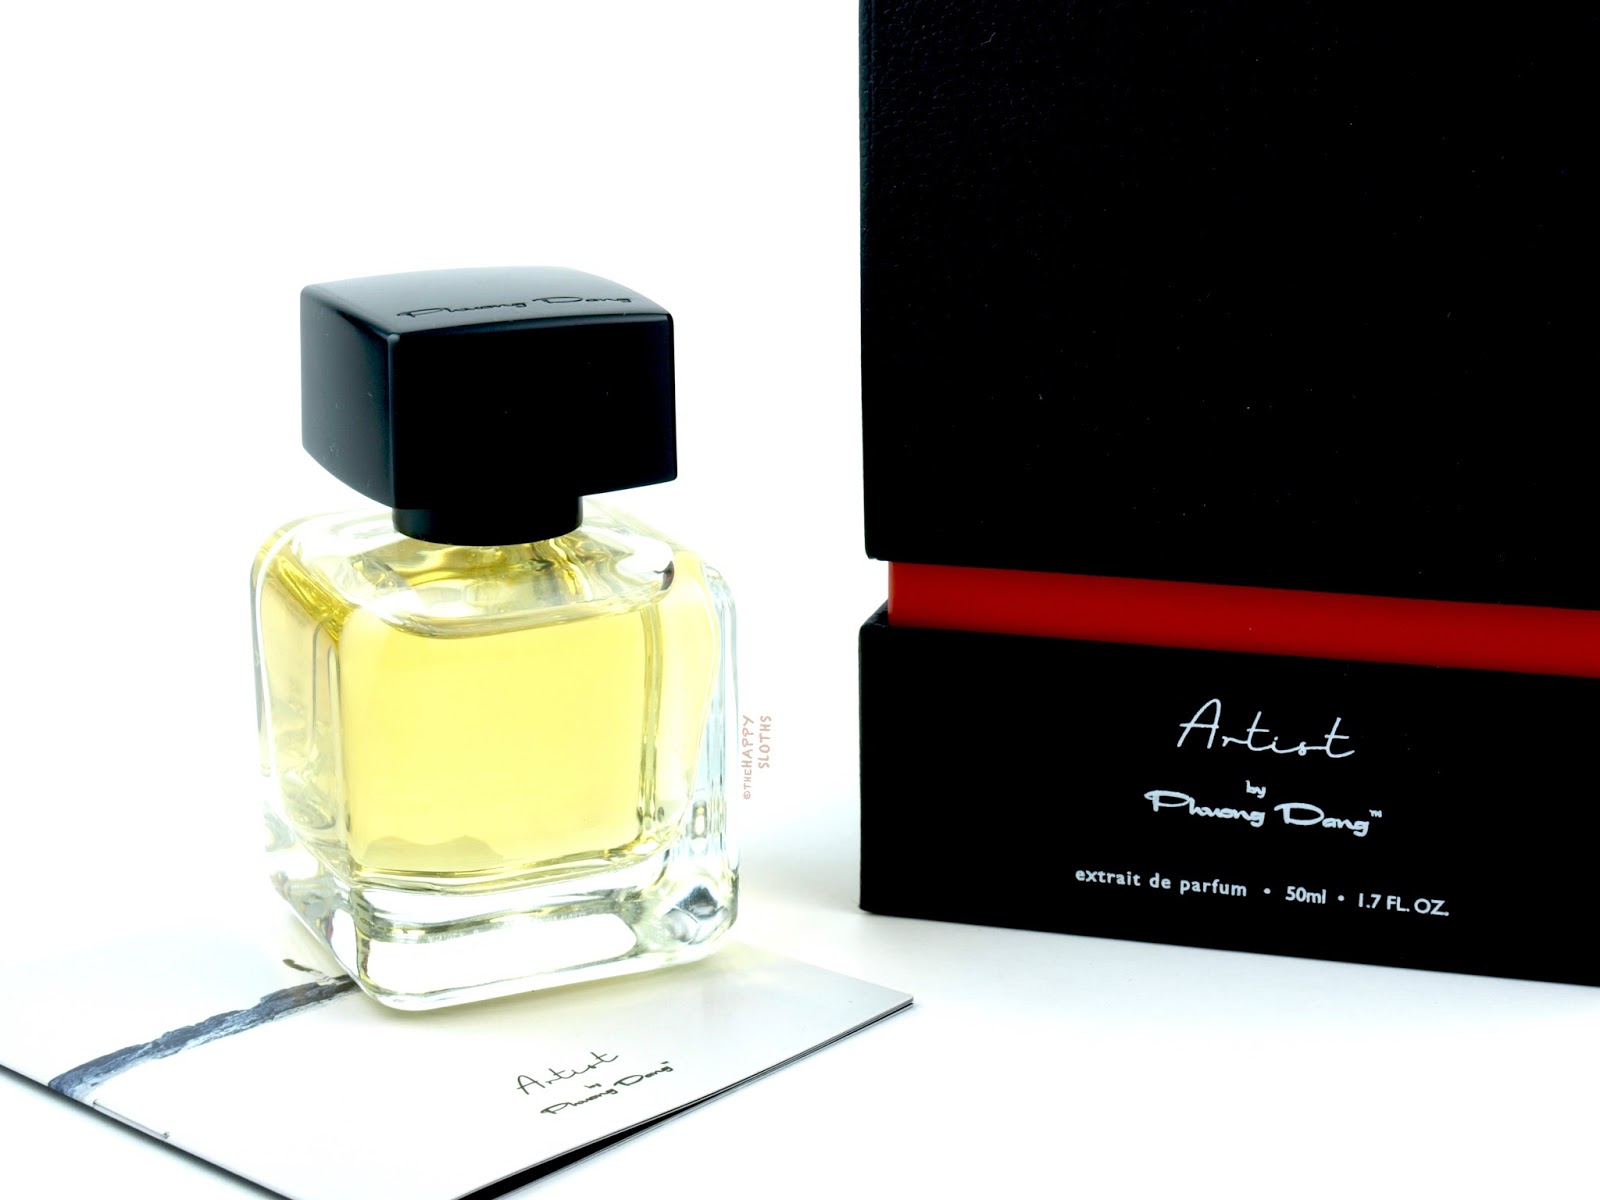 Artist by Phuong Dang | Extrait de Parfum: Review